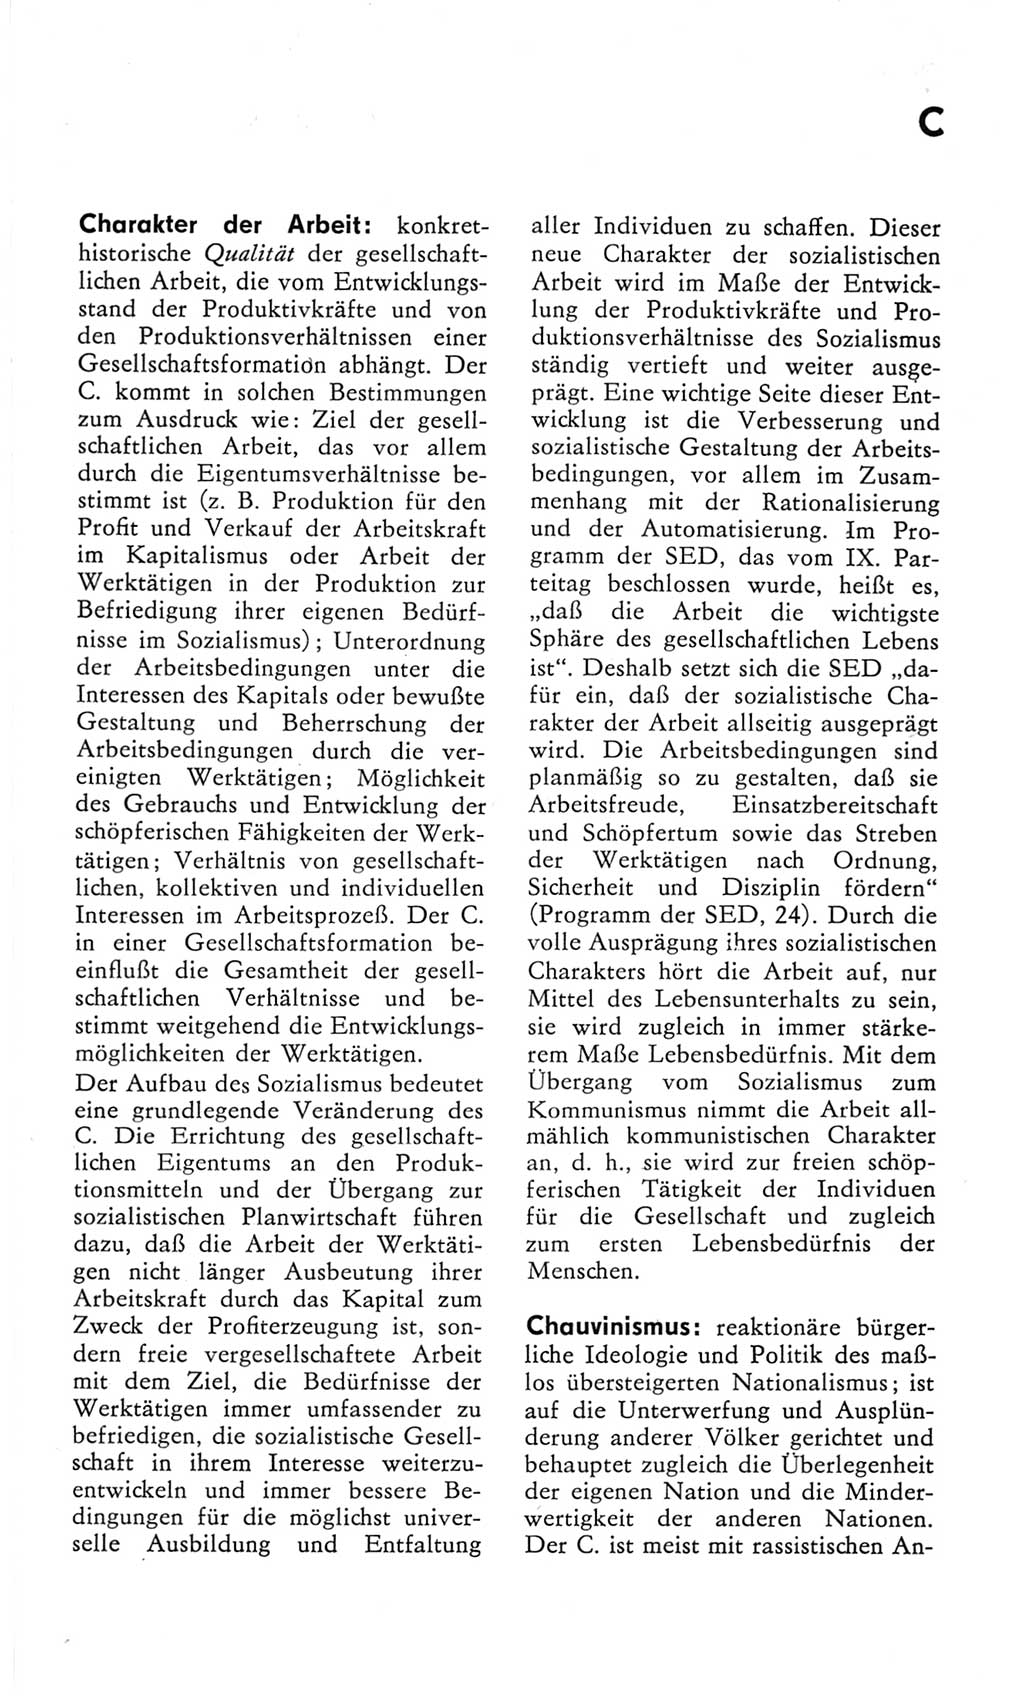 Kleines Wörterbuch der marxistisch-leninistischen Philosophie [Deutsche Demokratische Republik (DDR)] 1982, Seite 63 (Kl. Wb. ML Phil. DDR 1982, S. 63)